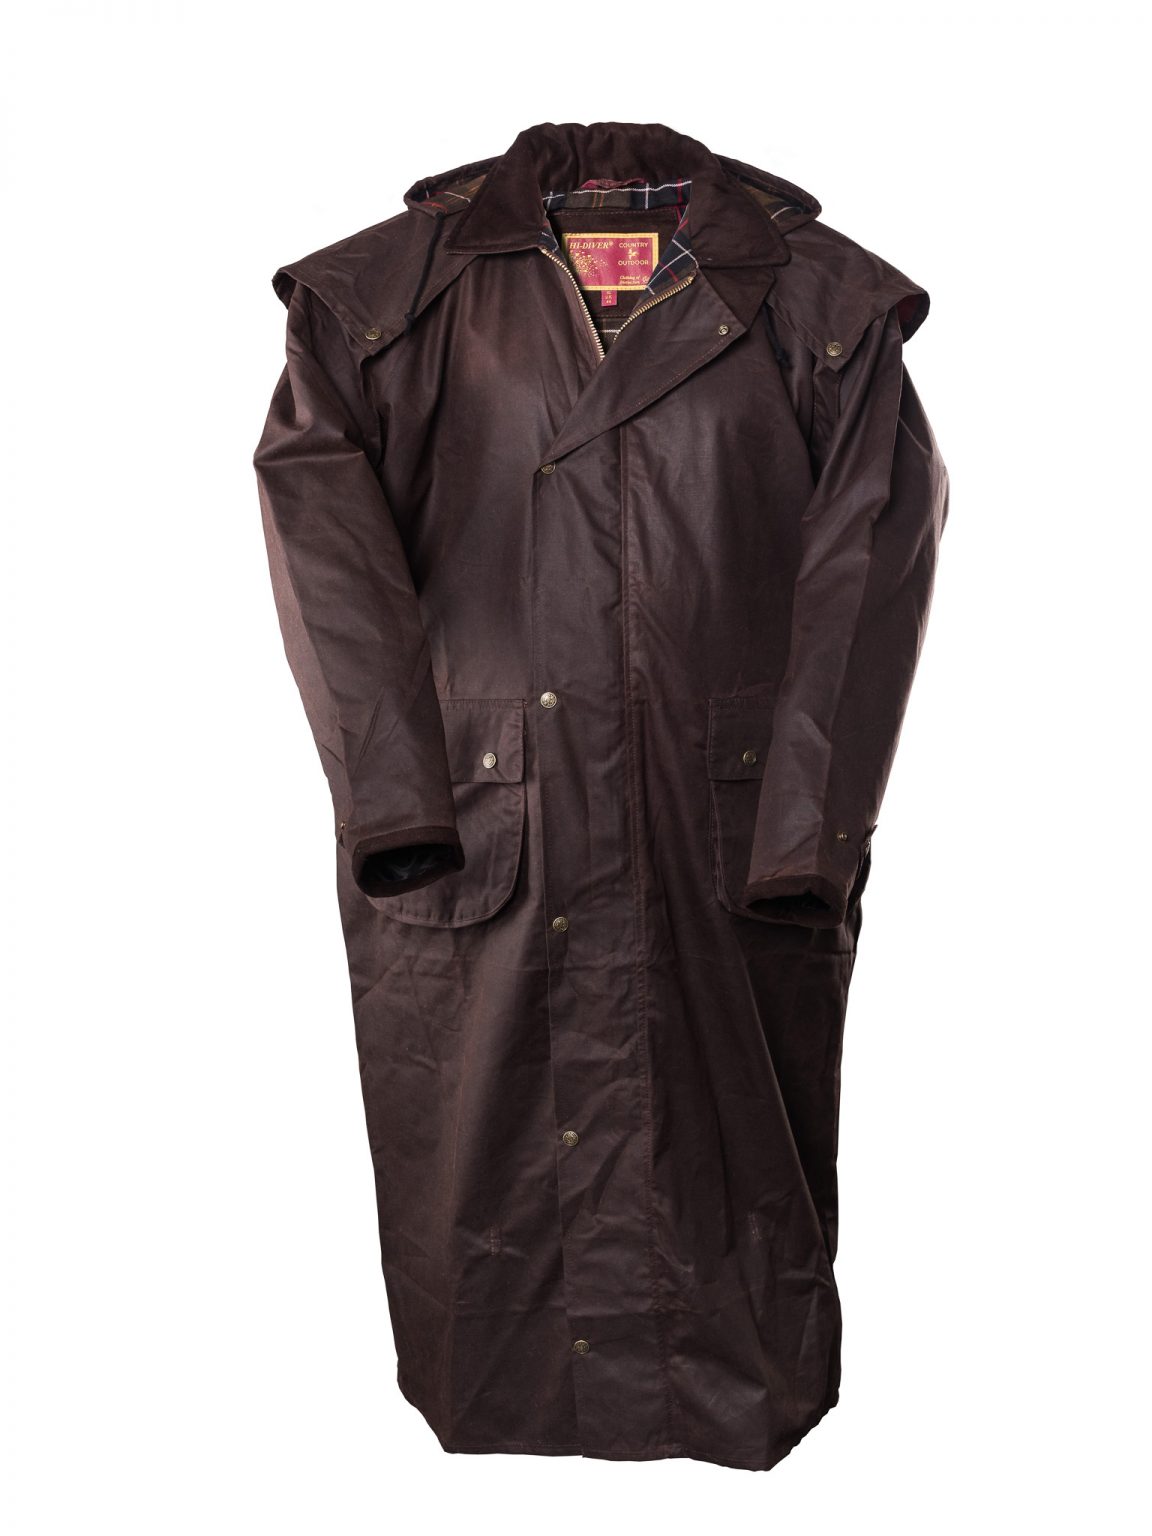 EdinburghOutdoorWear Mens Wax Jacket Olive - Edinburgh Outdoor Wear